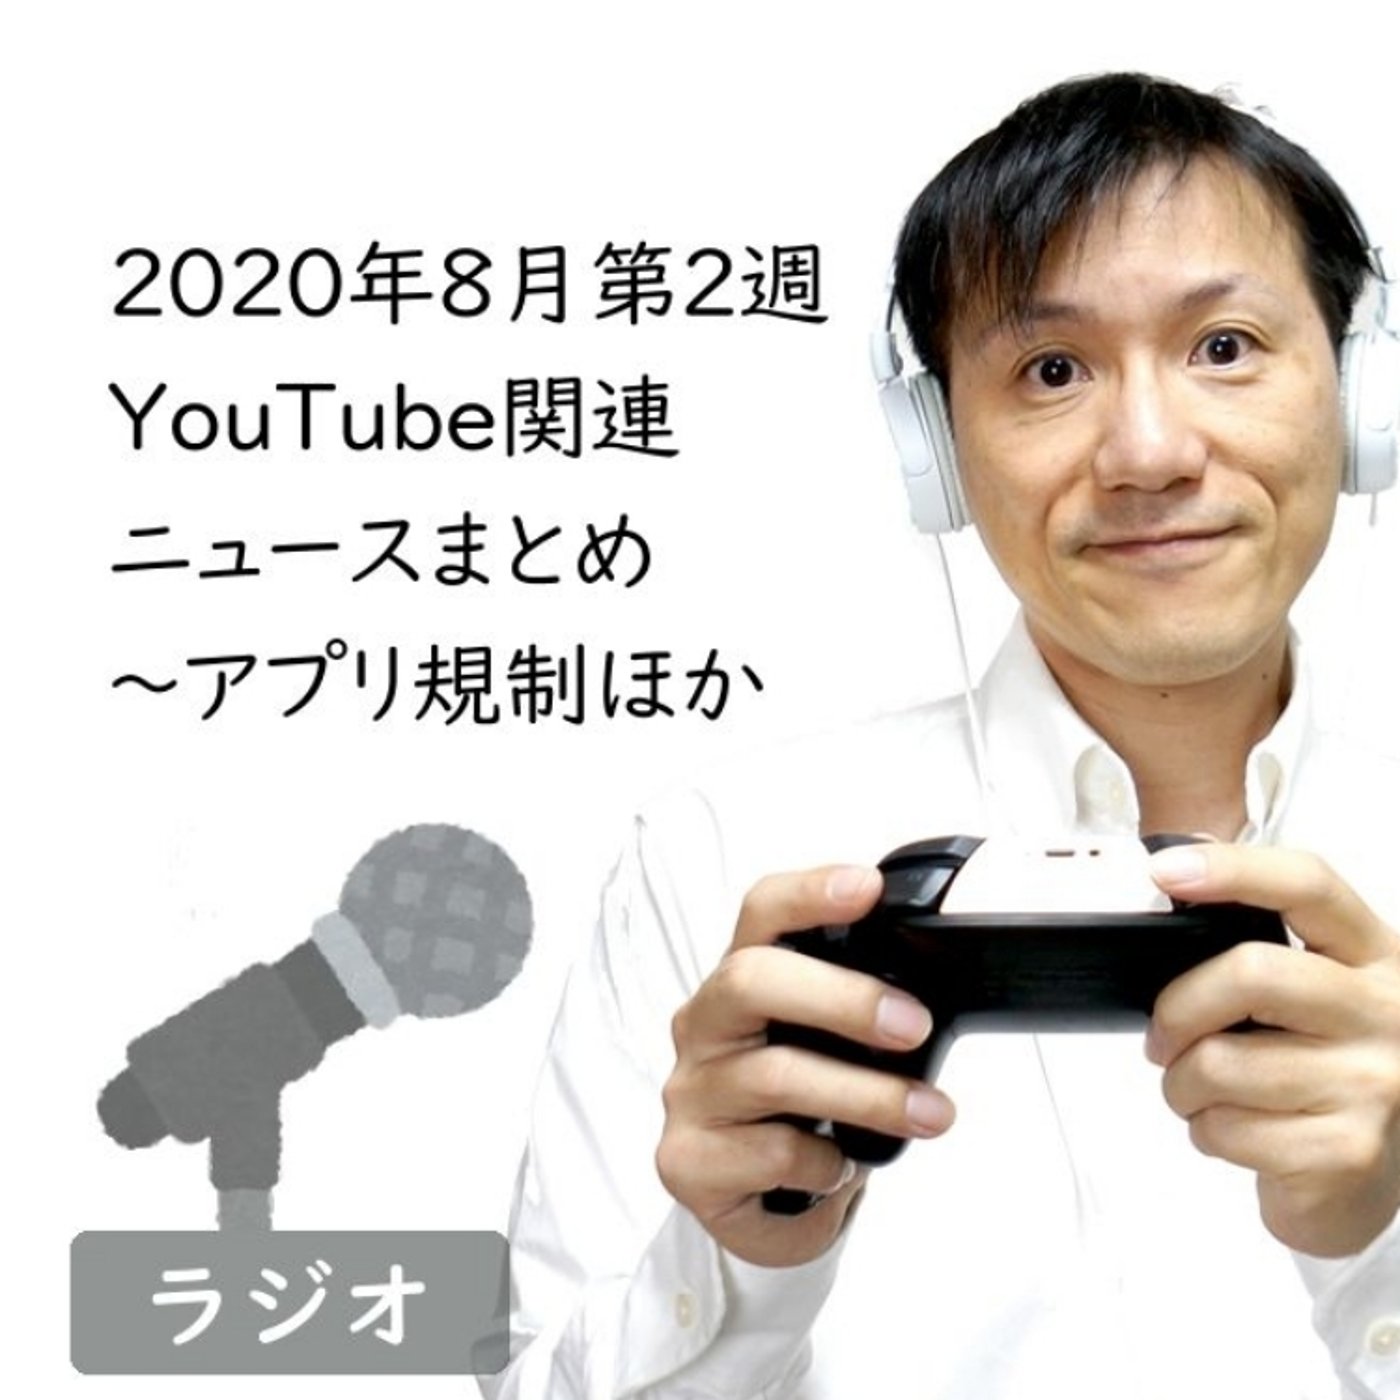 【#173】2020年8月第2週YouTube関連ニュースまとめ～アプリ規制